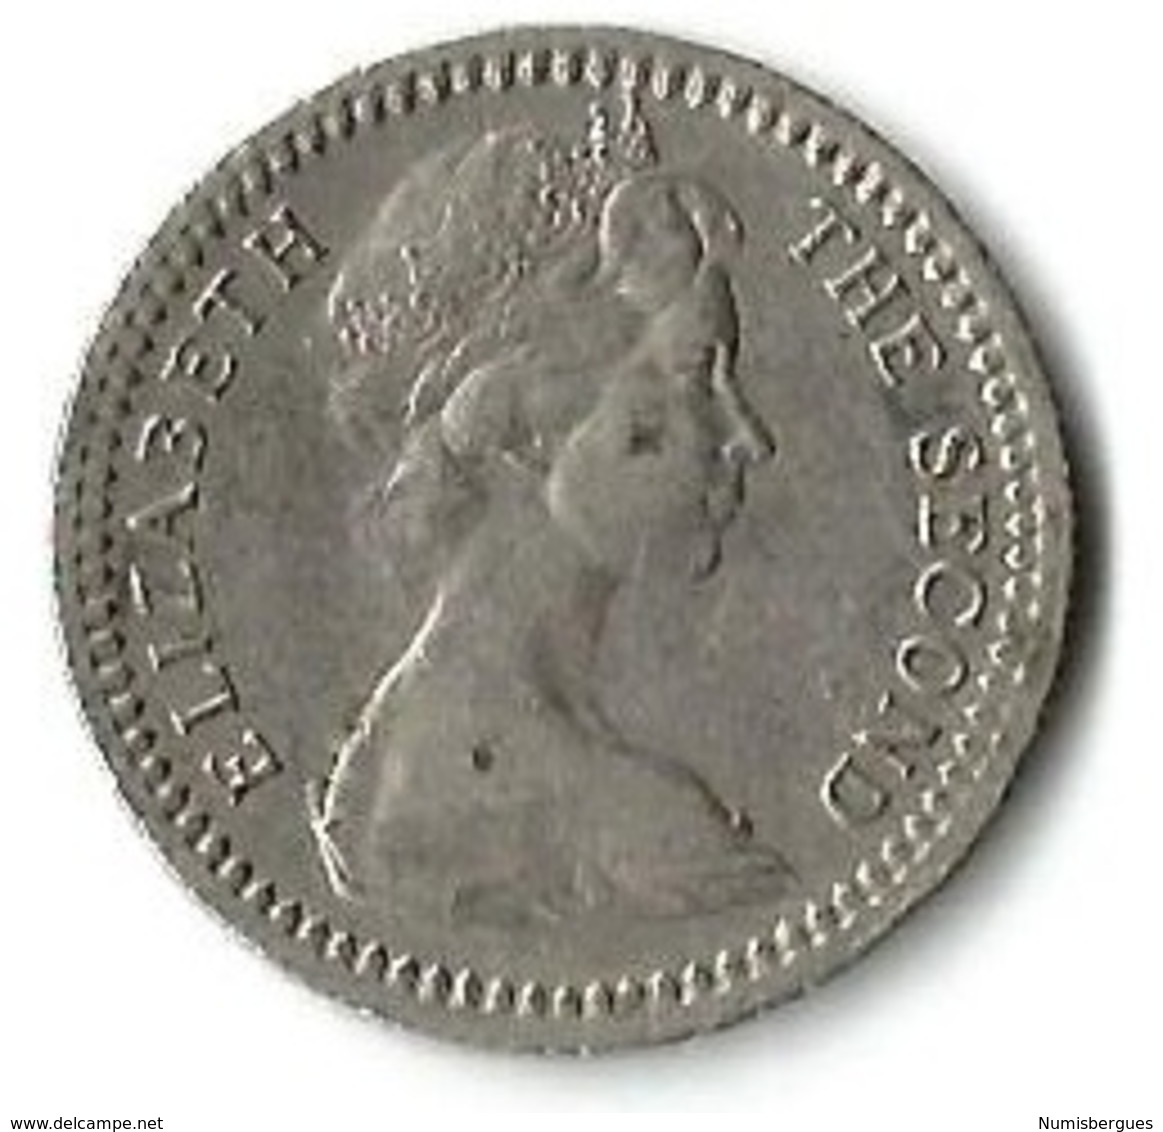 Lot 1 Pièces De Monnaie   5 Cents 1964 - Rhodésie